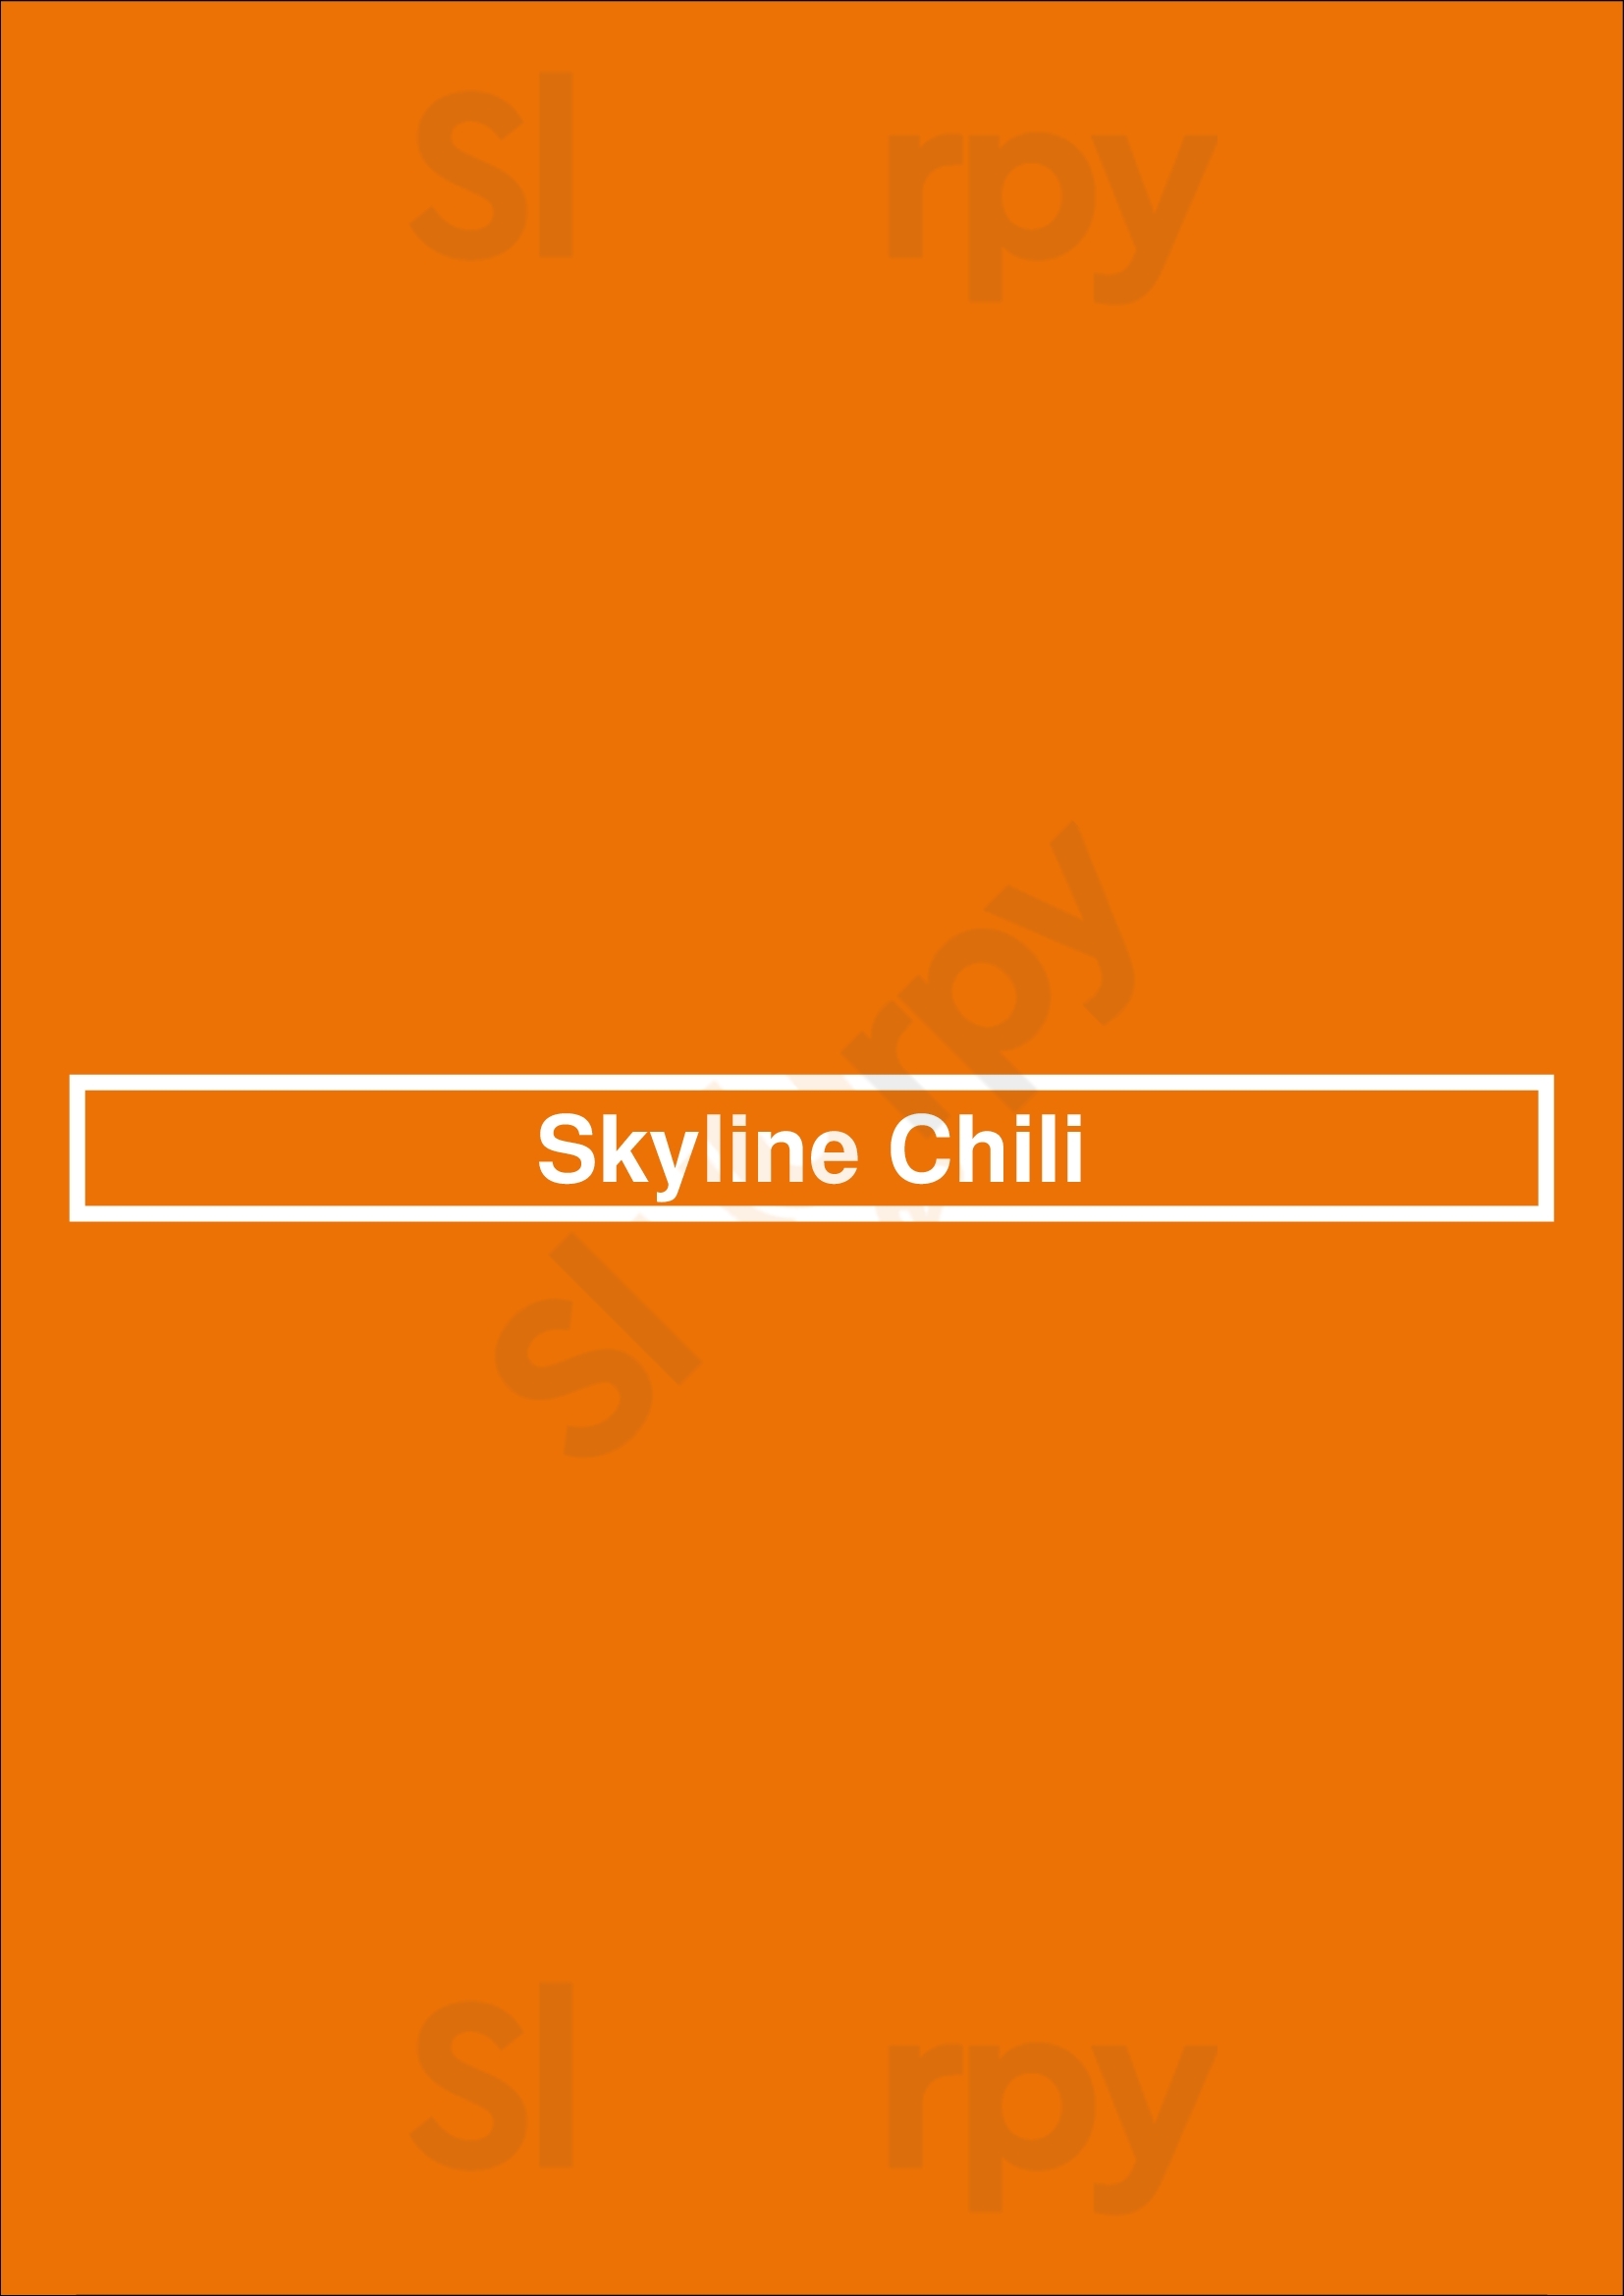 Skyline Chili Naples Menu - 1